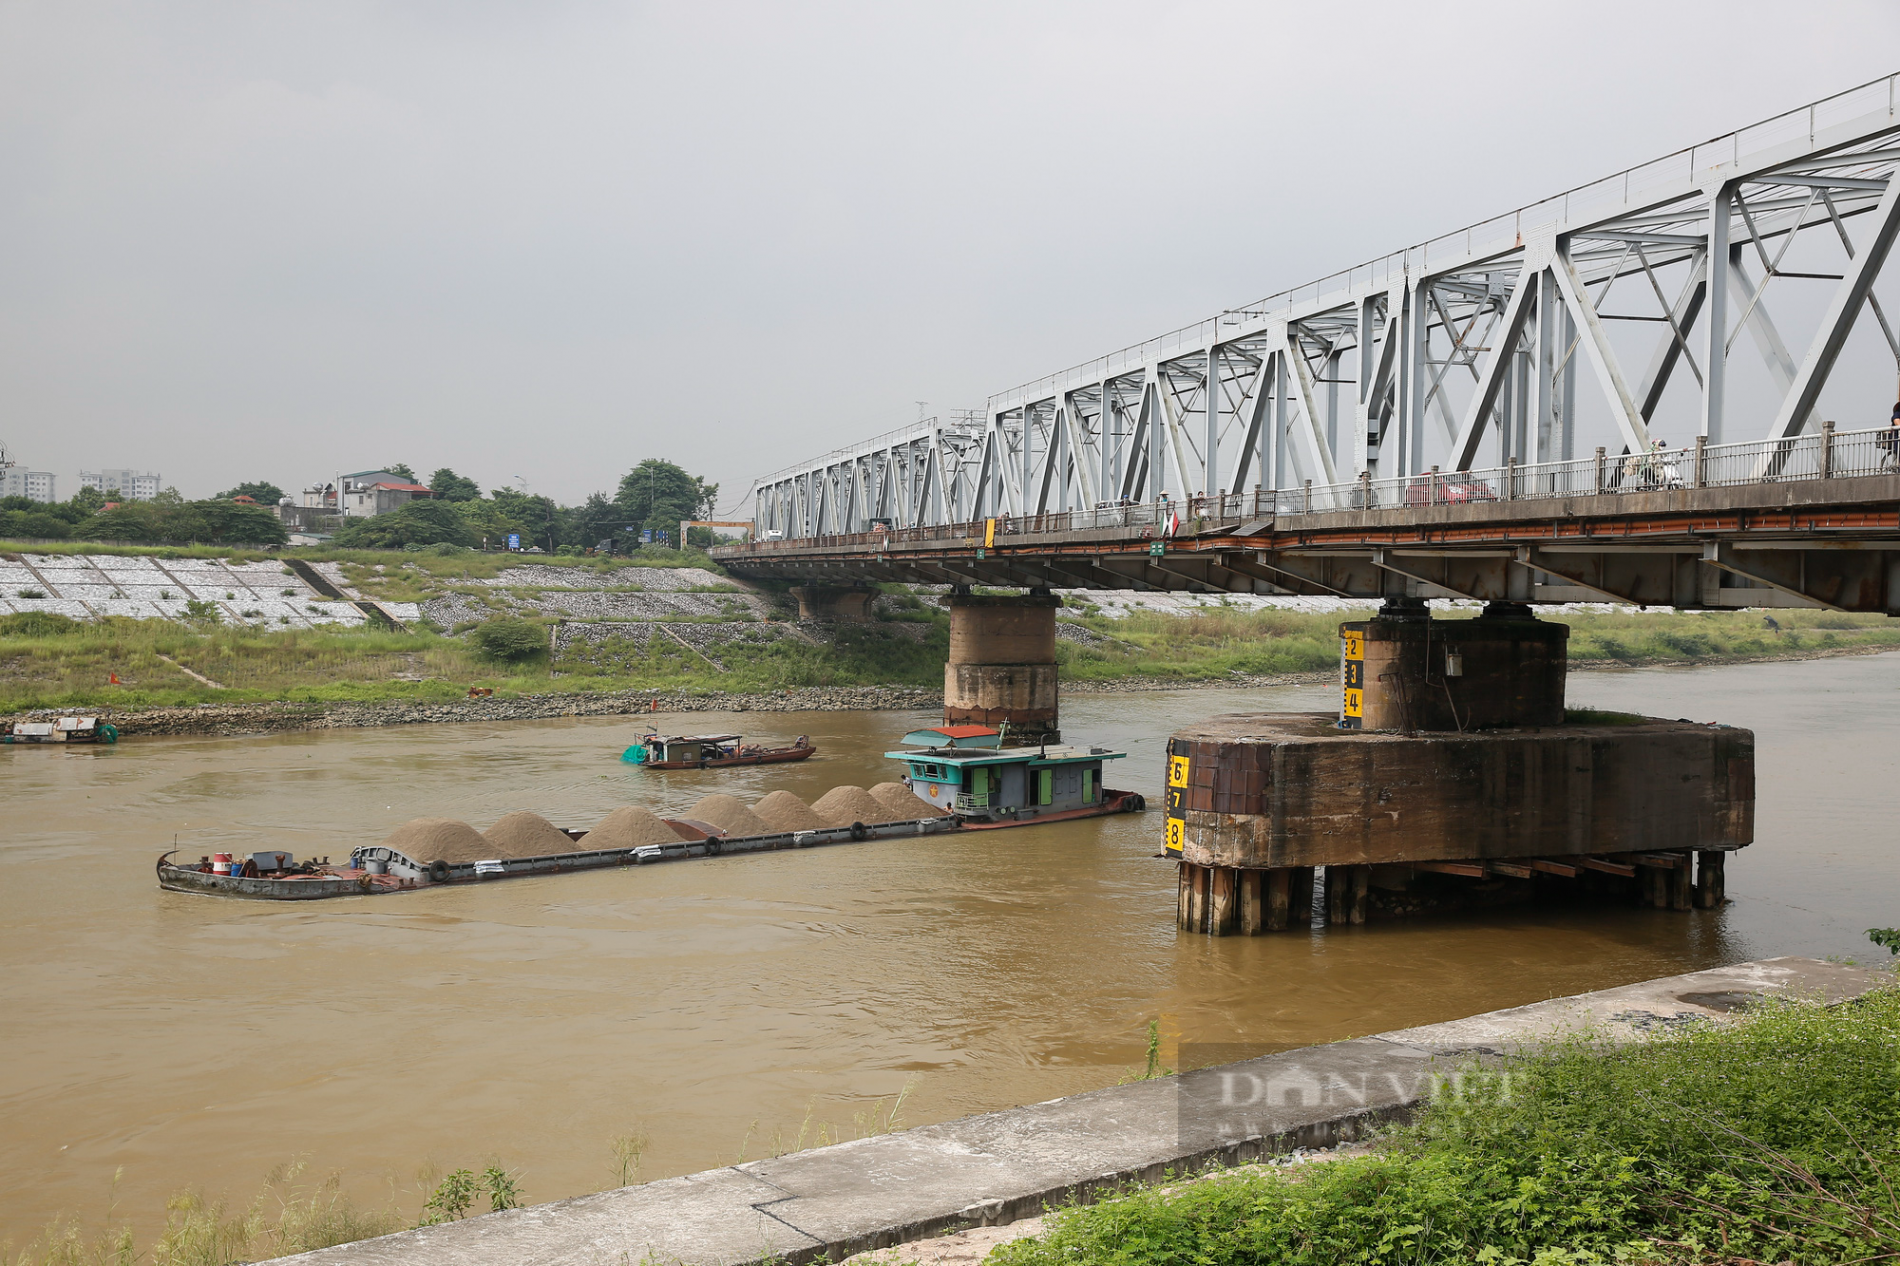 Hà Nội: Cận cảnh cây cầu xuống cấp nghiêm trọng được đề xuất xây mới trị giá gần 1800 tỷ đồng - Ảnh 9.